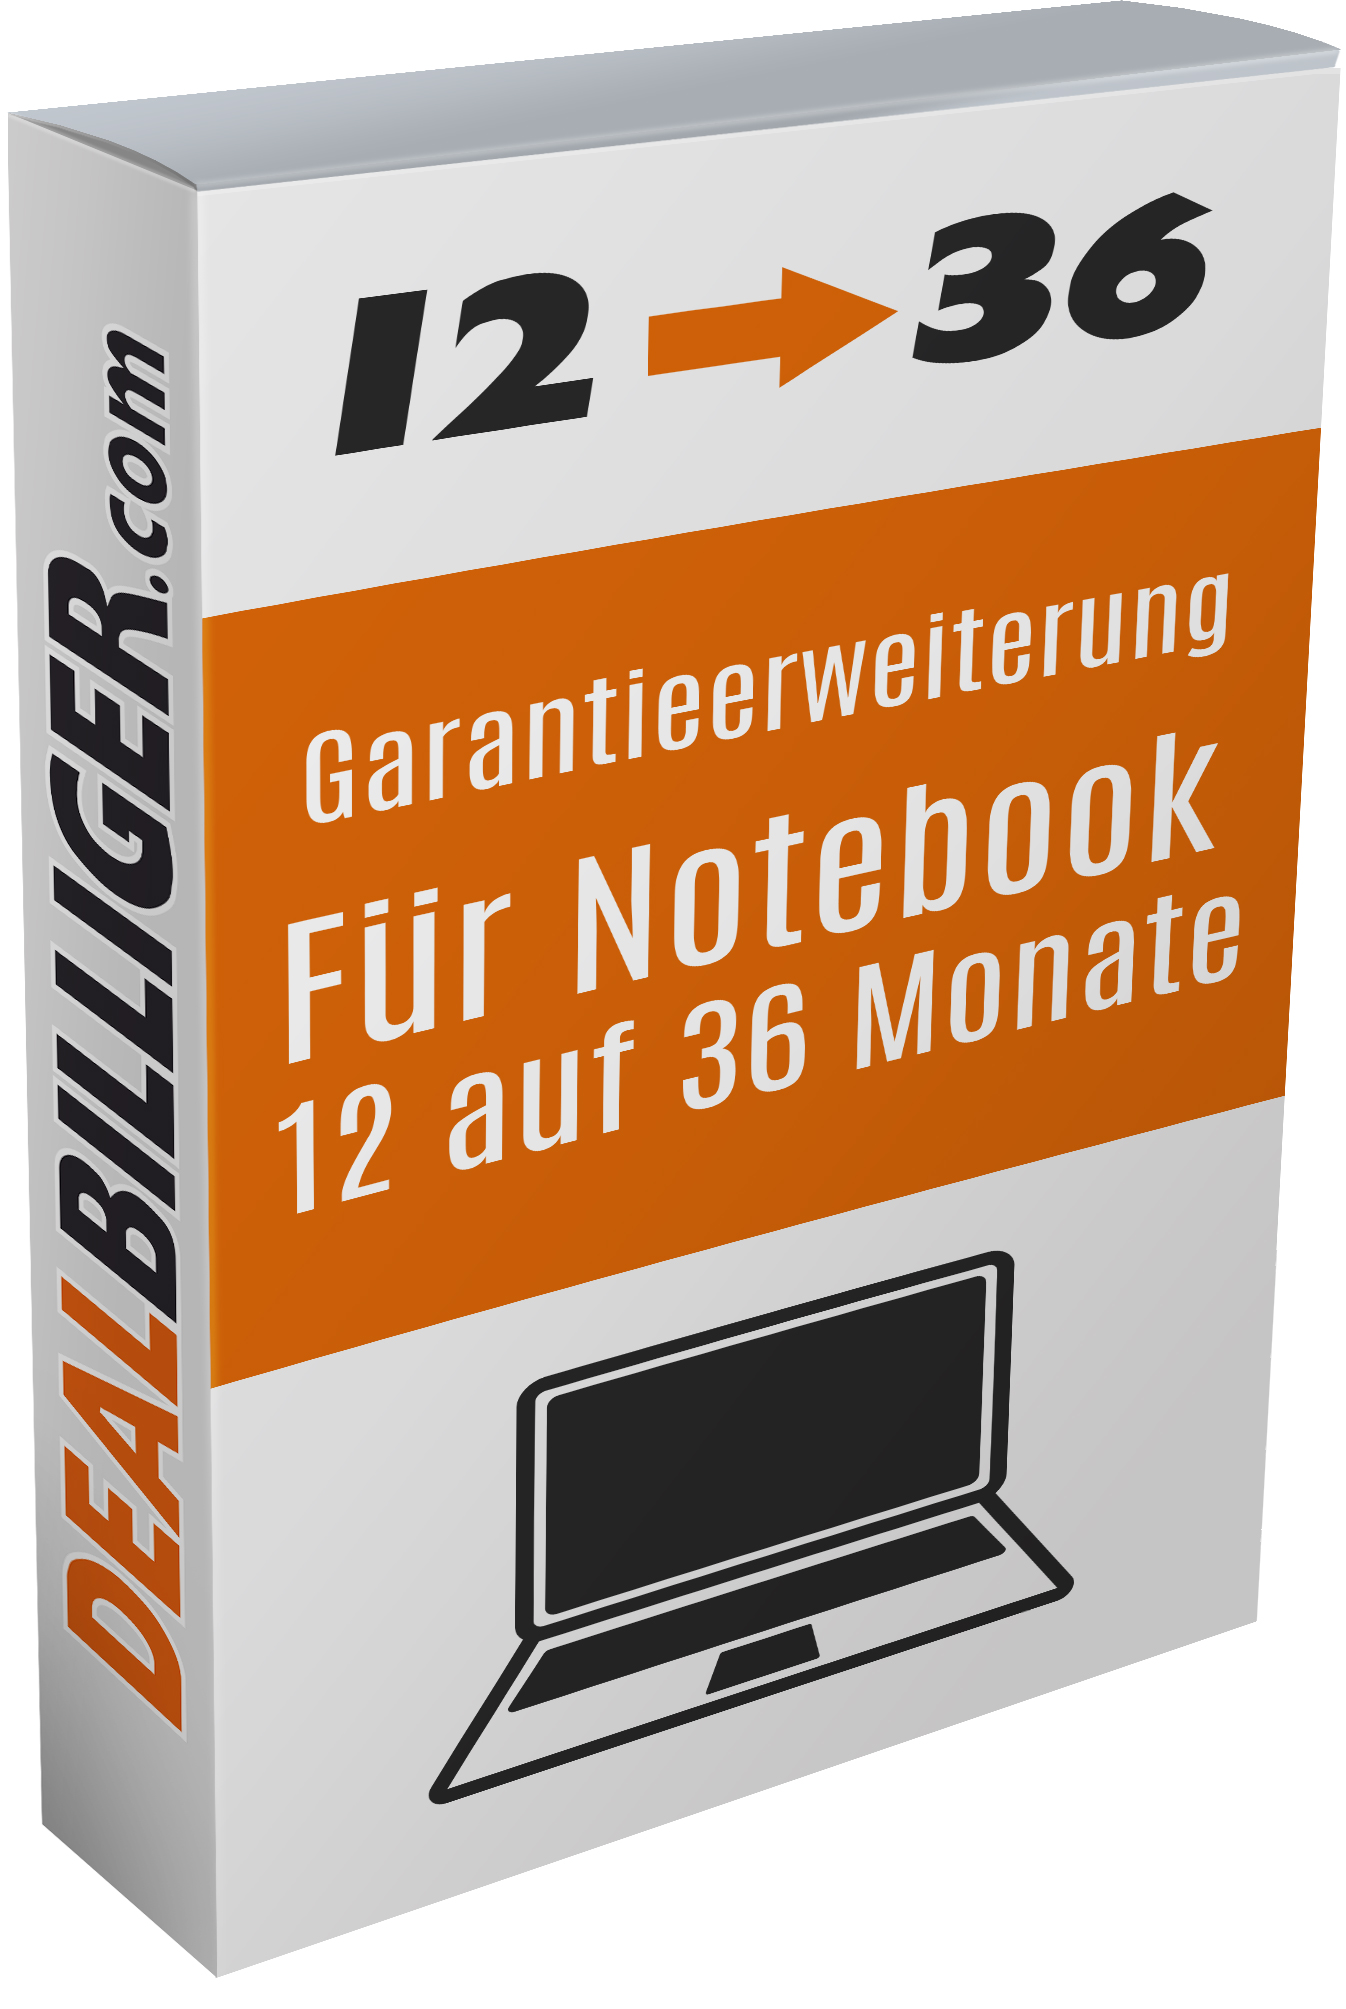 Garantieerweiterung für Refurbished Notebooks von 12 auf 36 Monate